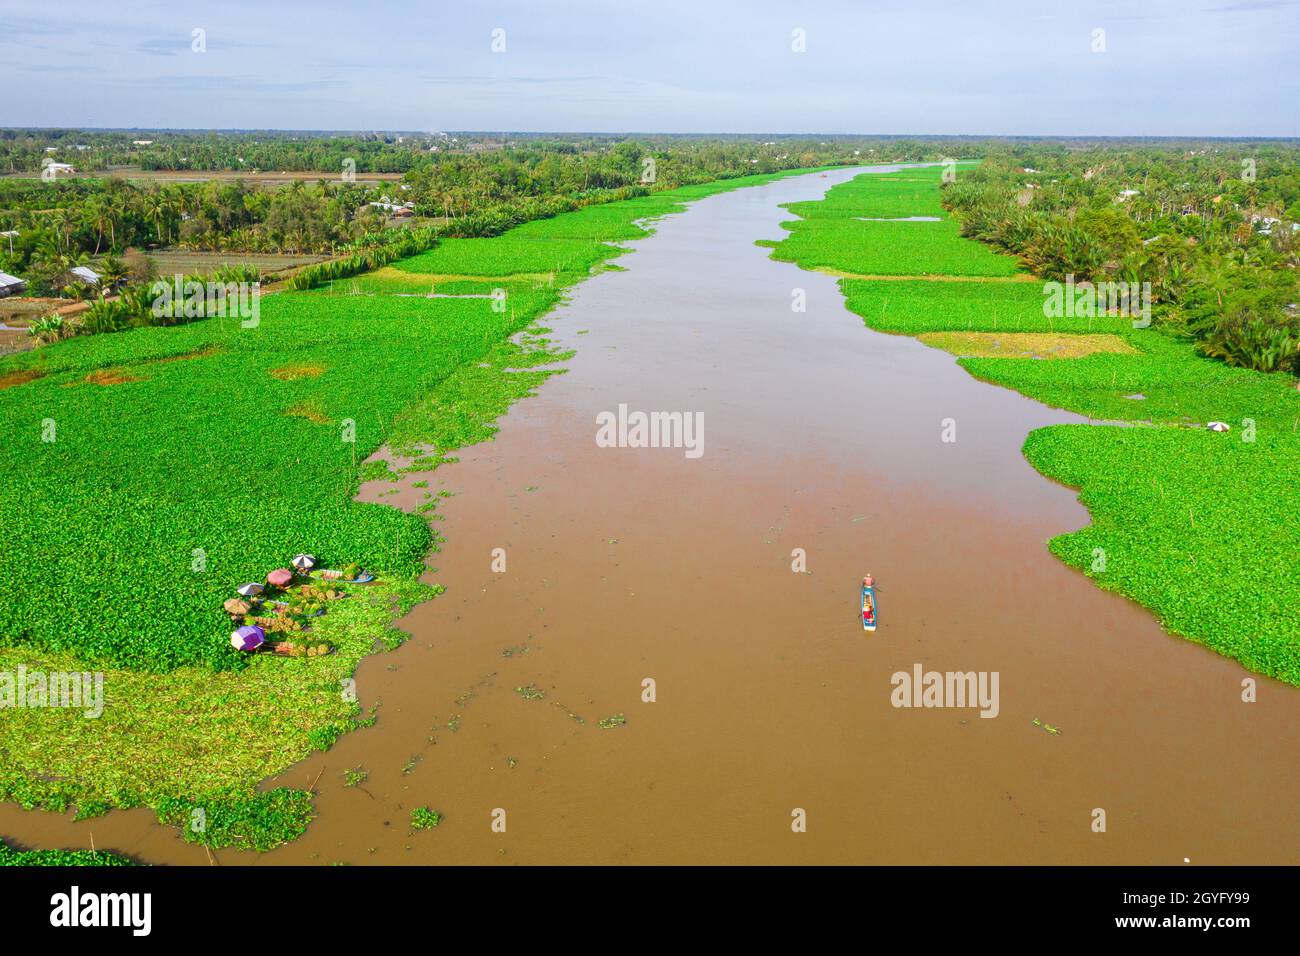 Area specializzata nella coltivazione di giacinto d'acqua per fare artigianato a Hau Giang, Foto Stock